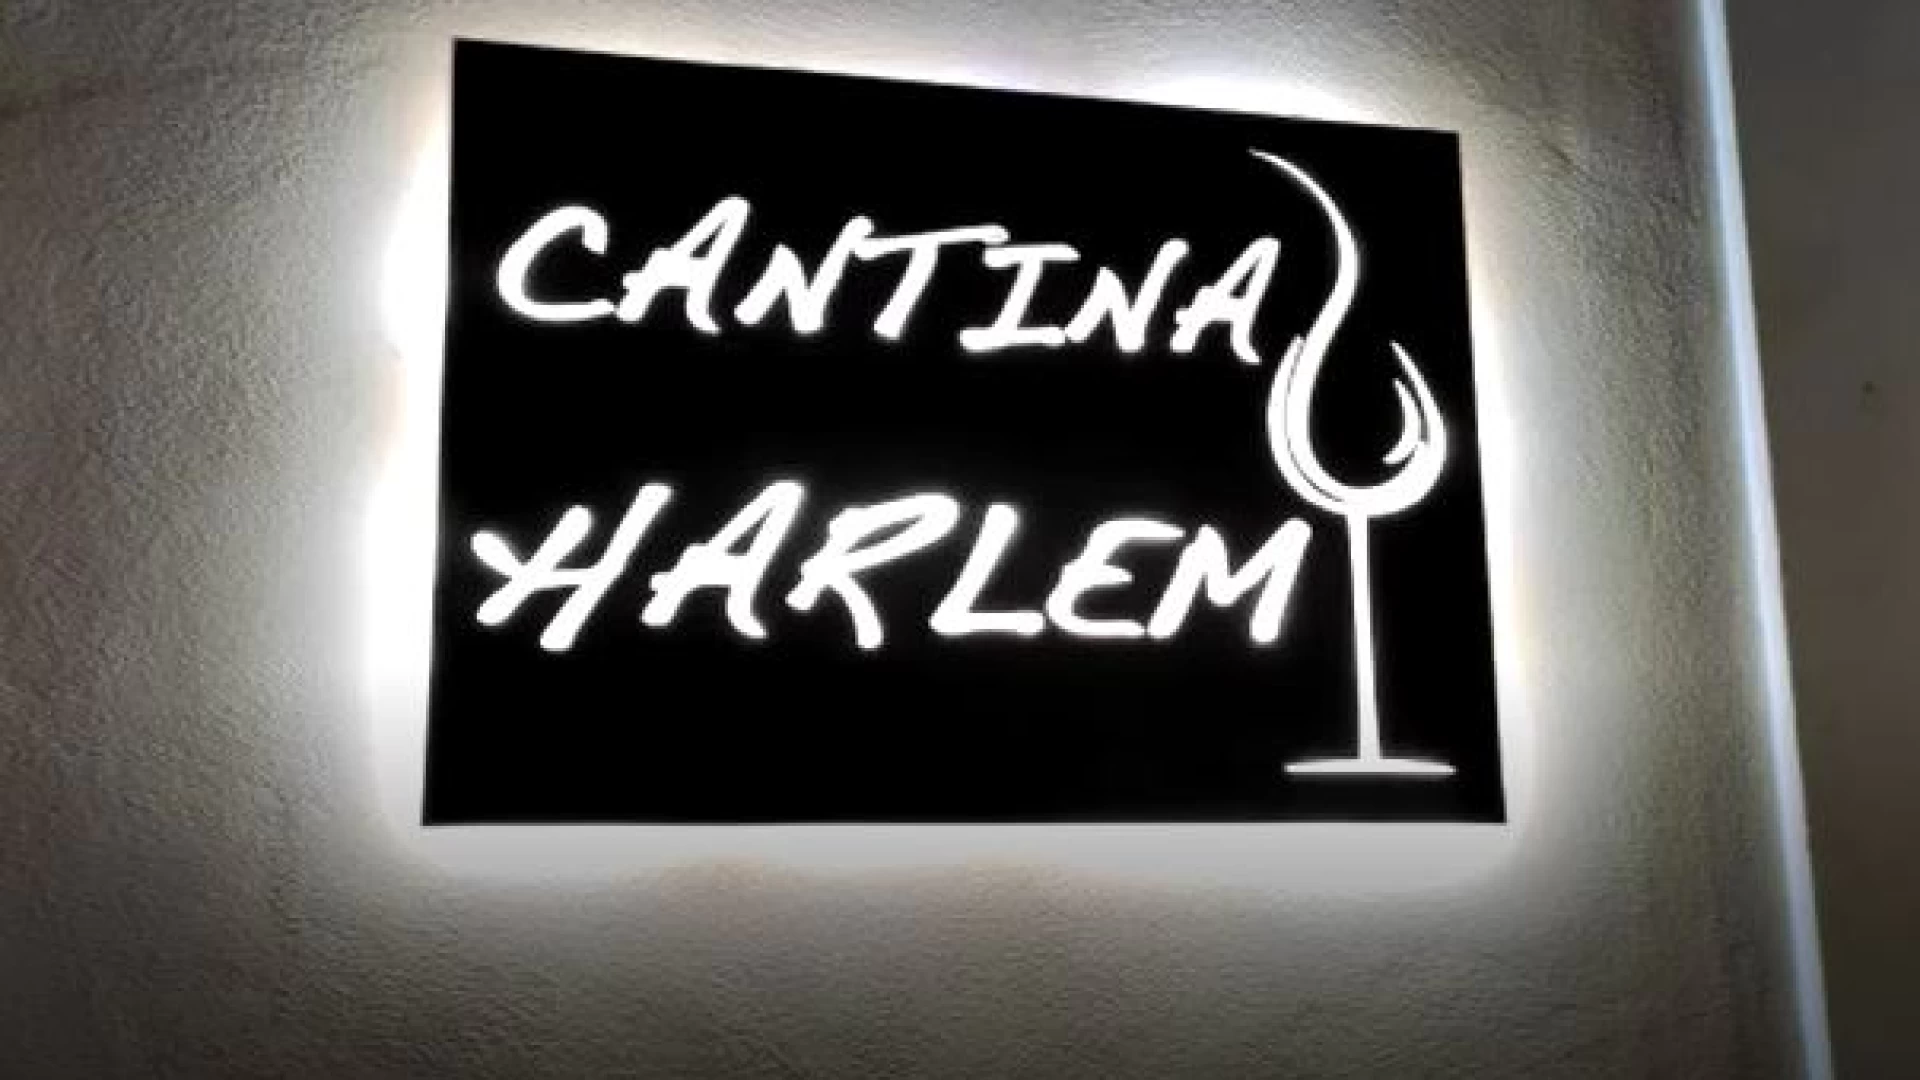 Cantina Harlem vi attende a Castel Di Sangro in Piazza Plebiscito. Guarda lo spot...